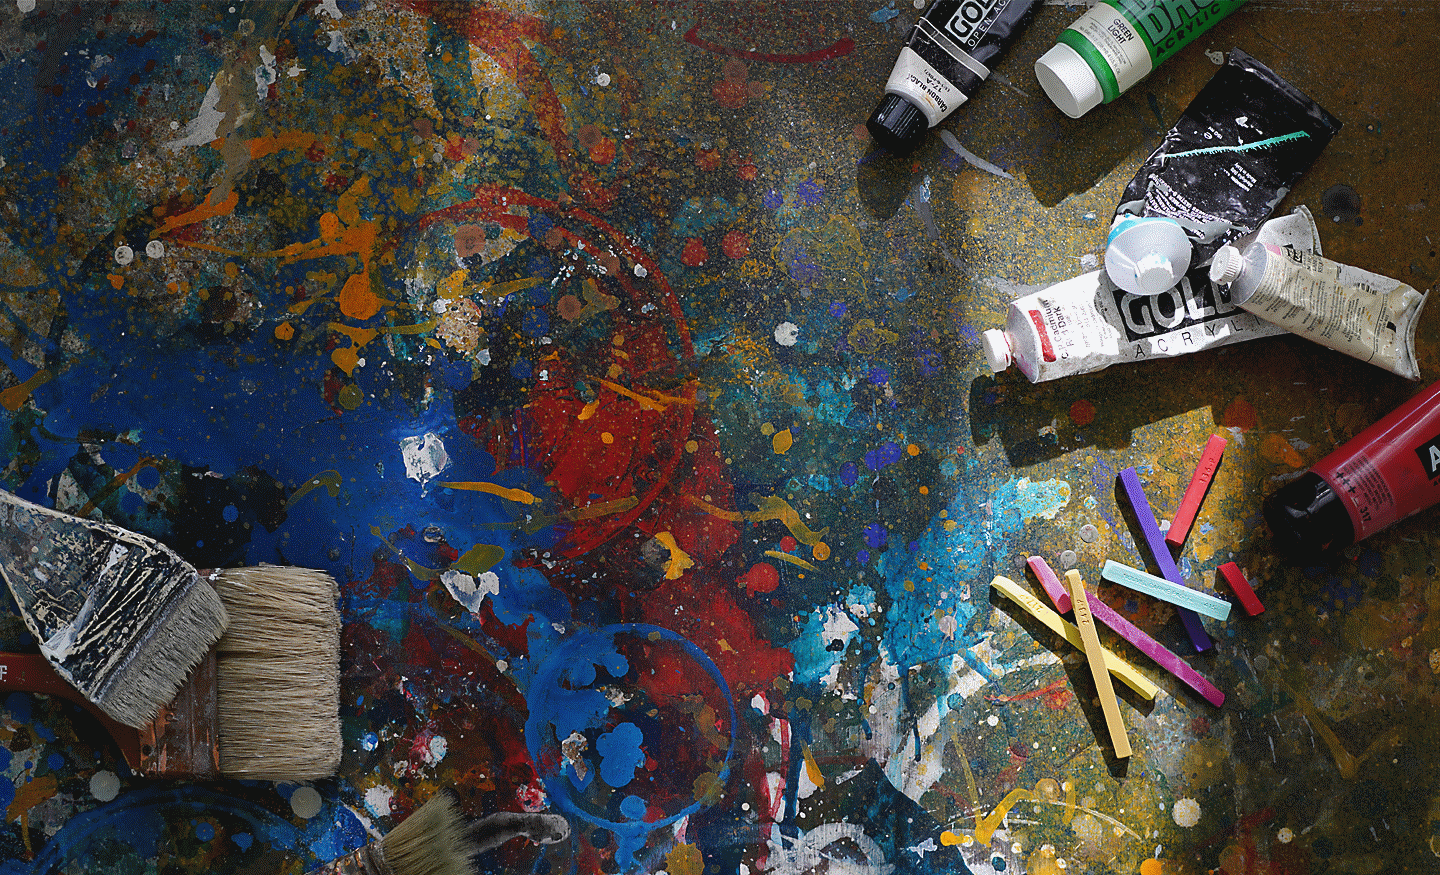 Splatter paint on floor